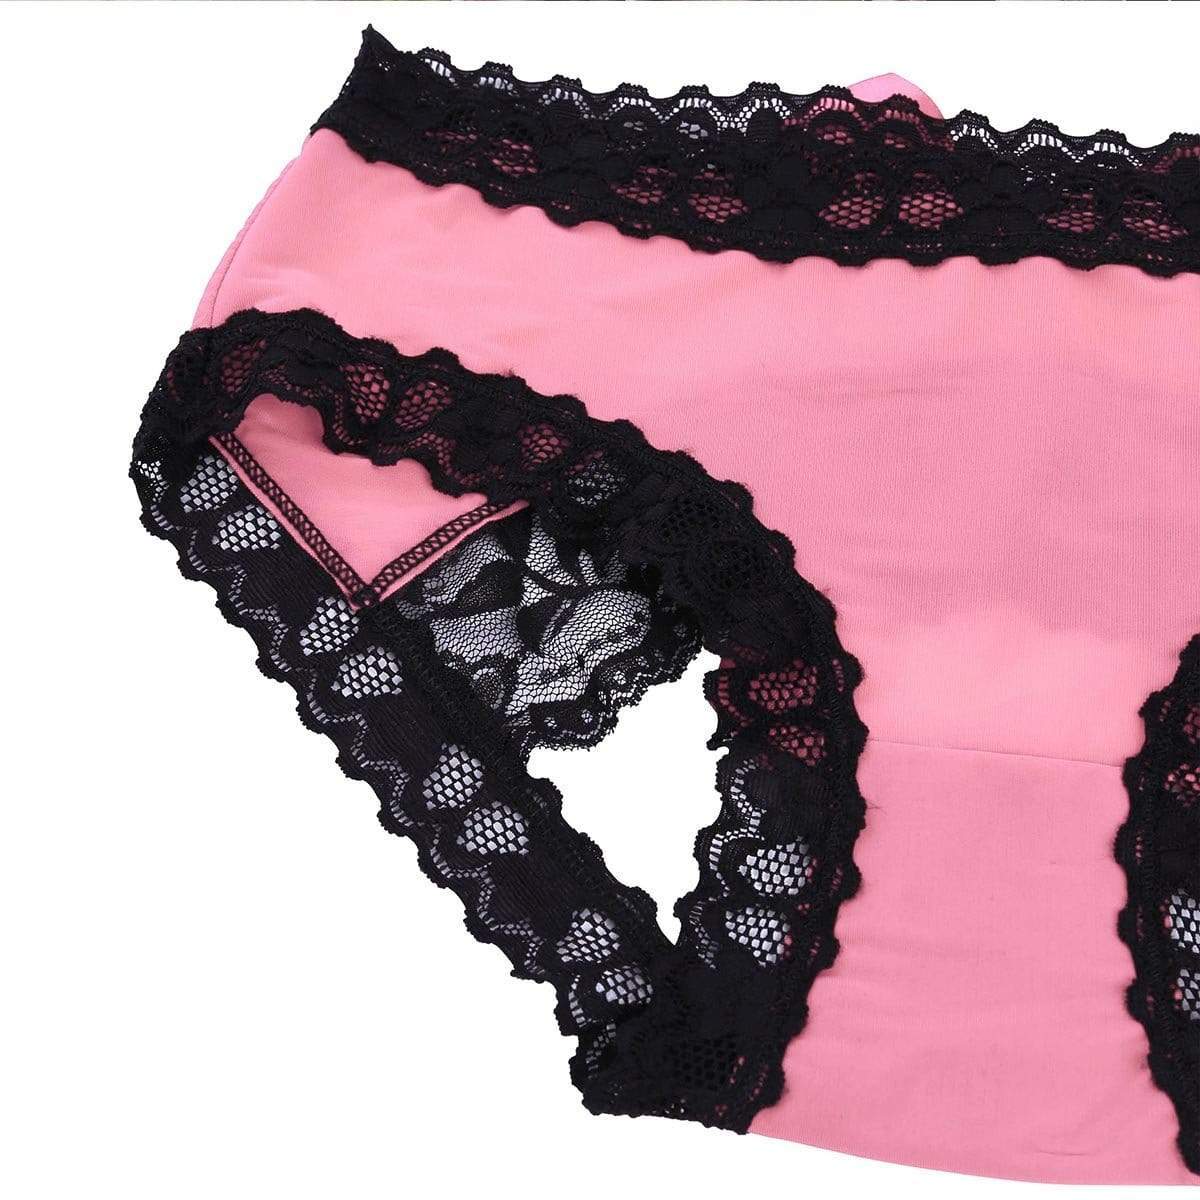 Kinky Cloth Panties Open Bottom Bowknot Panties